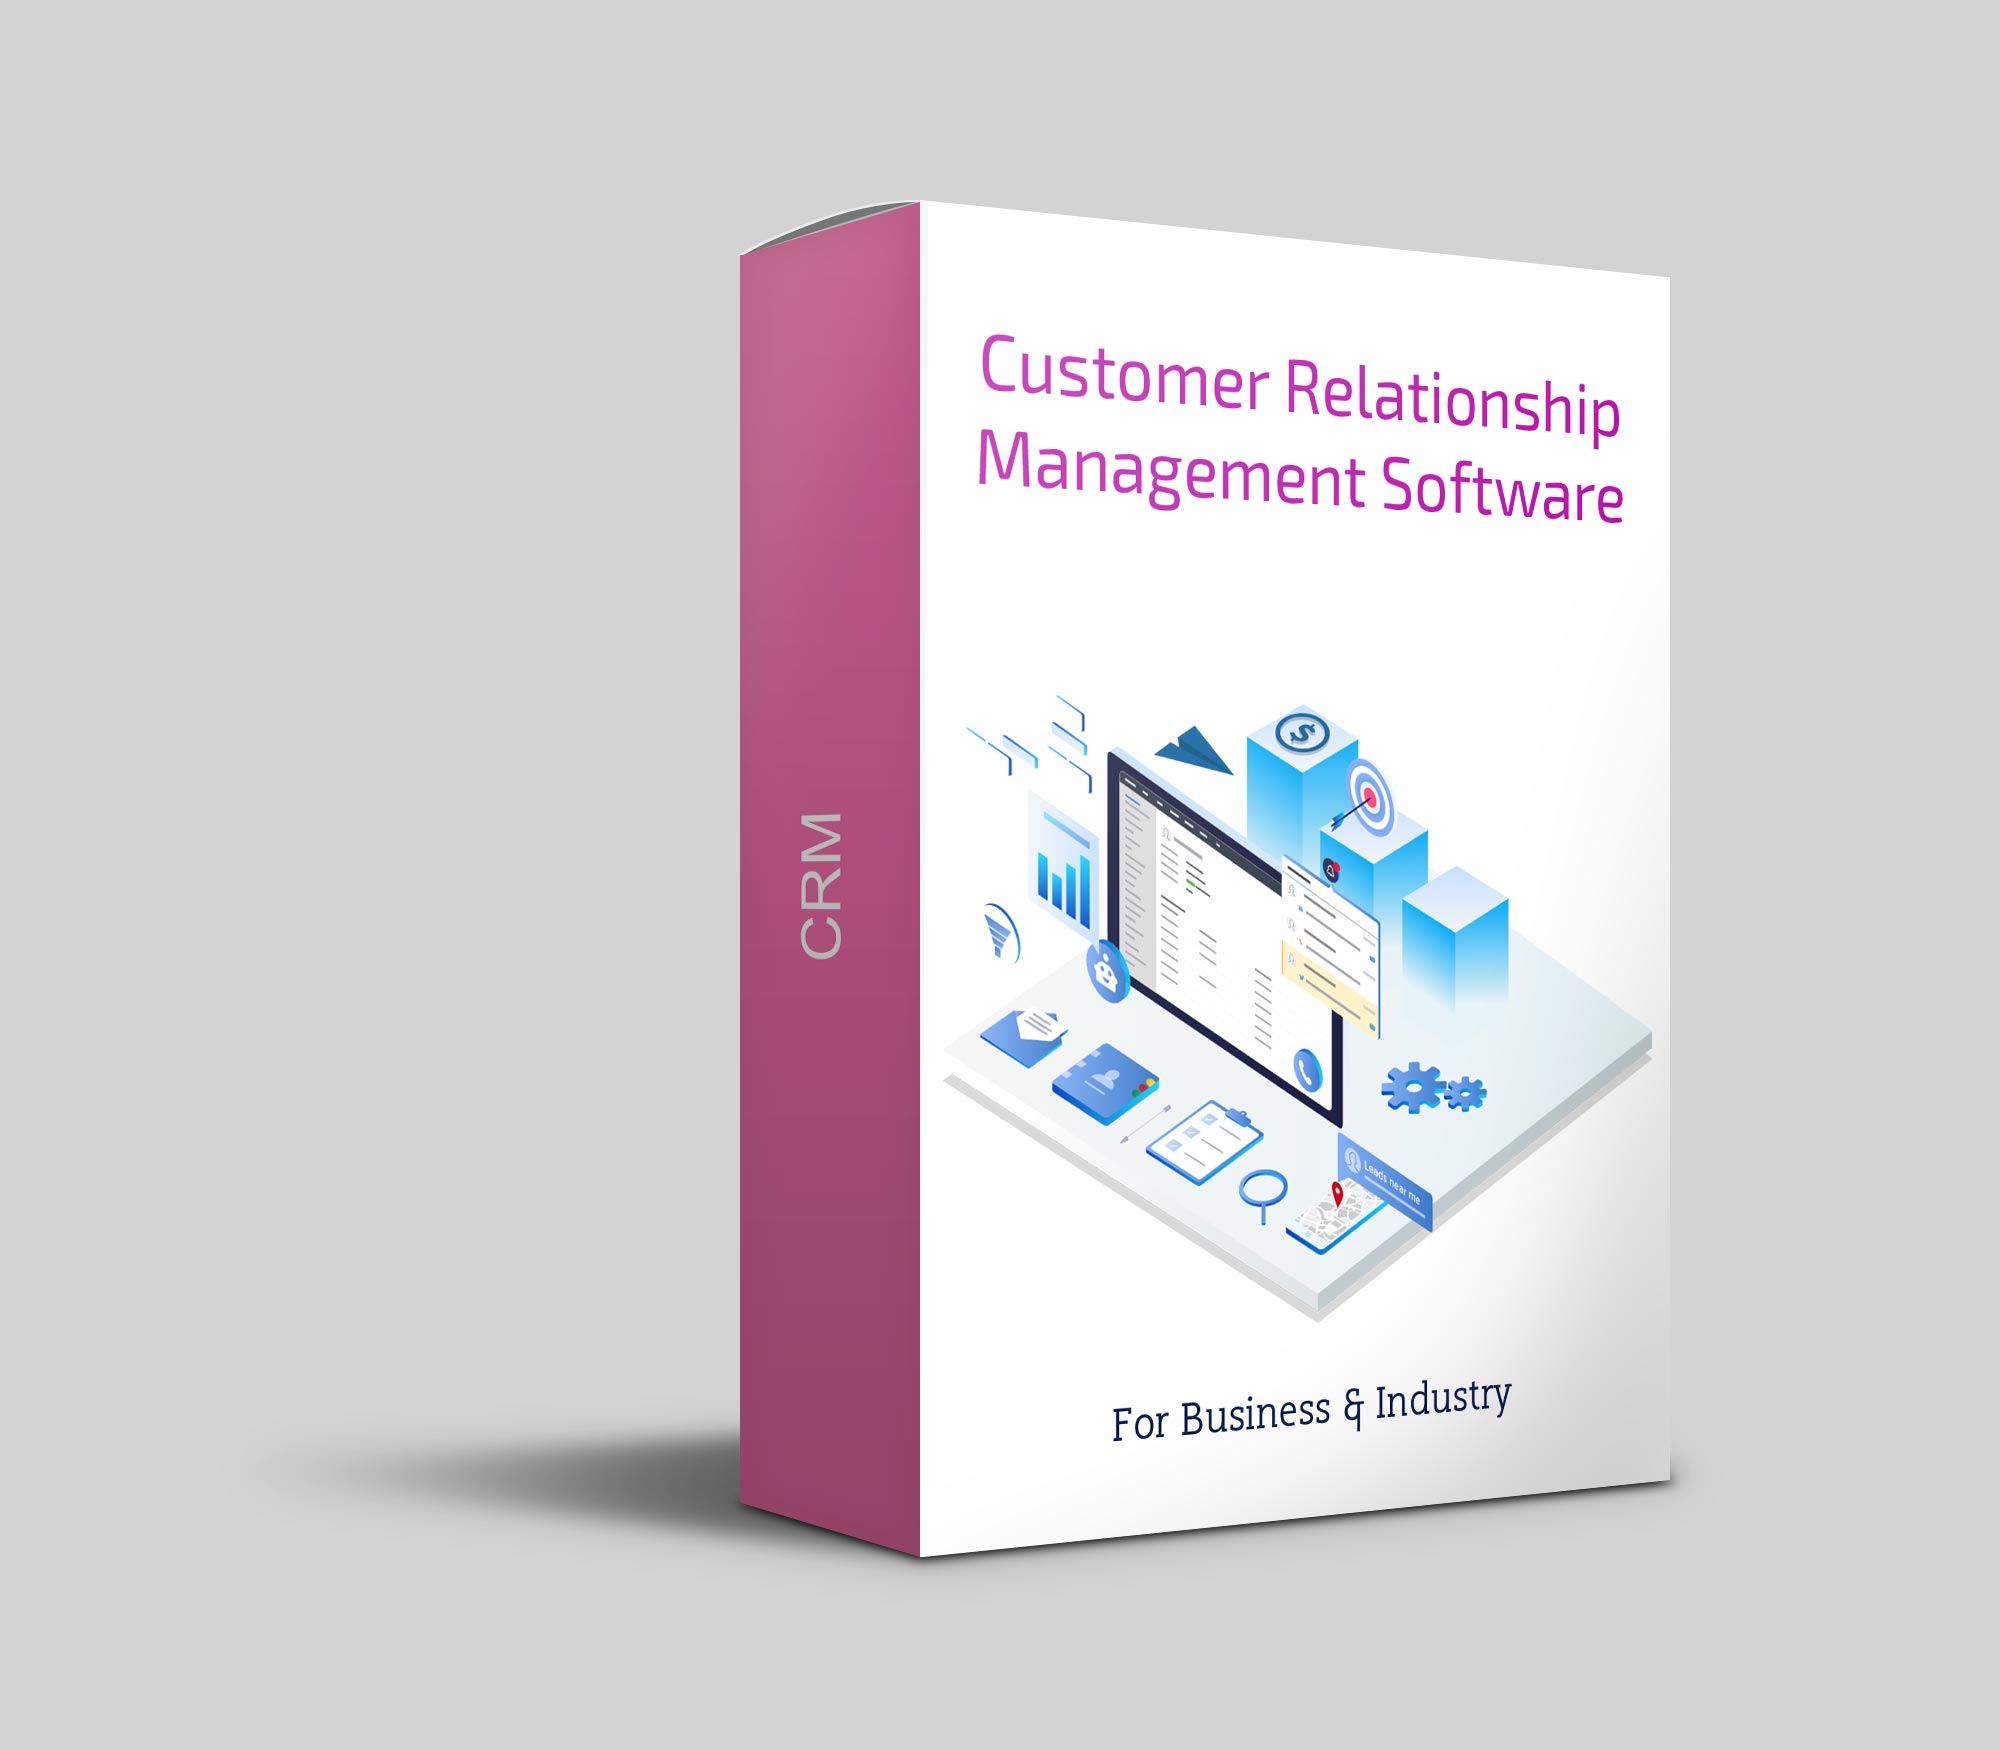 CRM - Customer Relationship Management Software